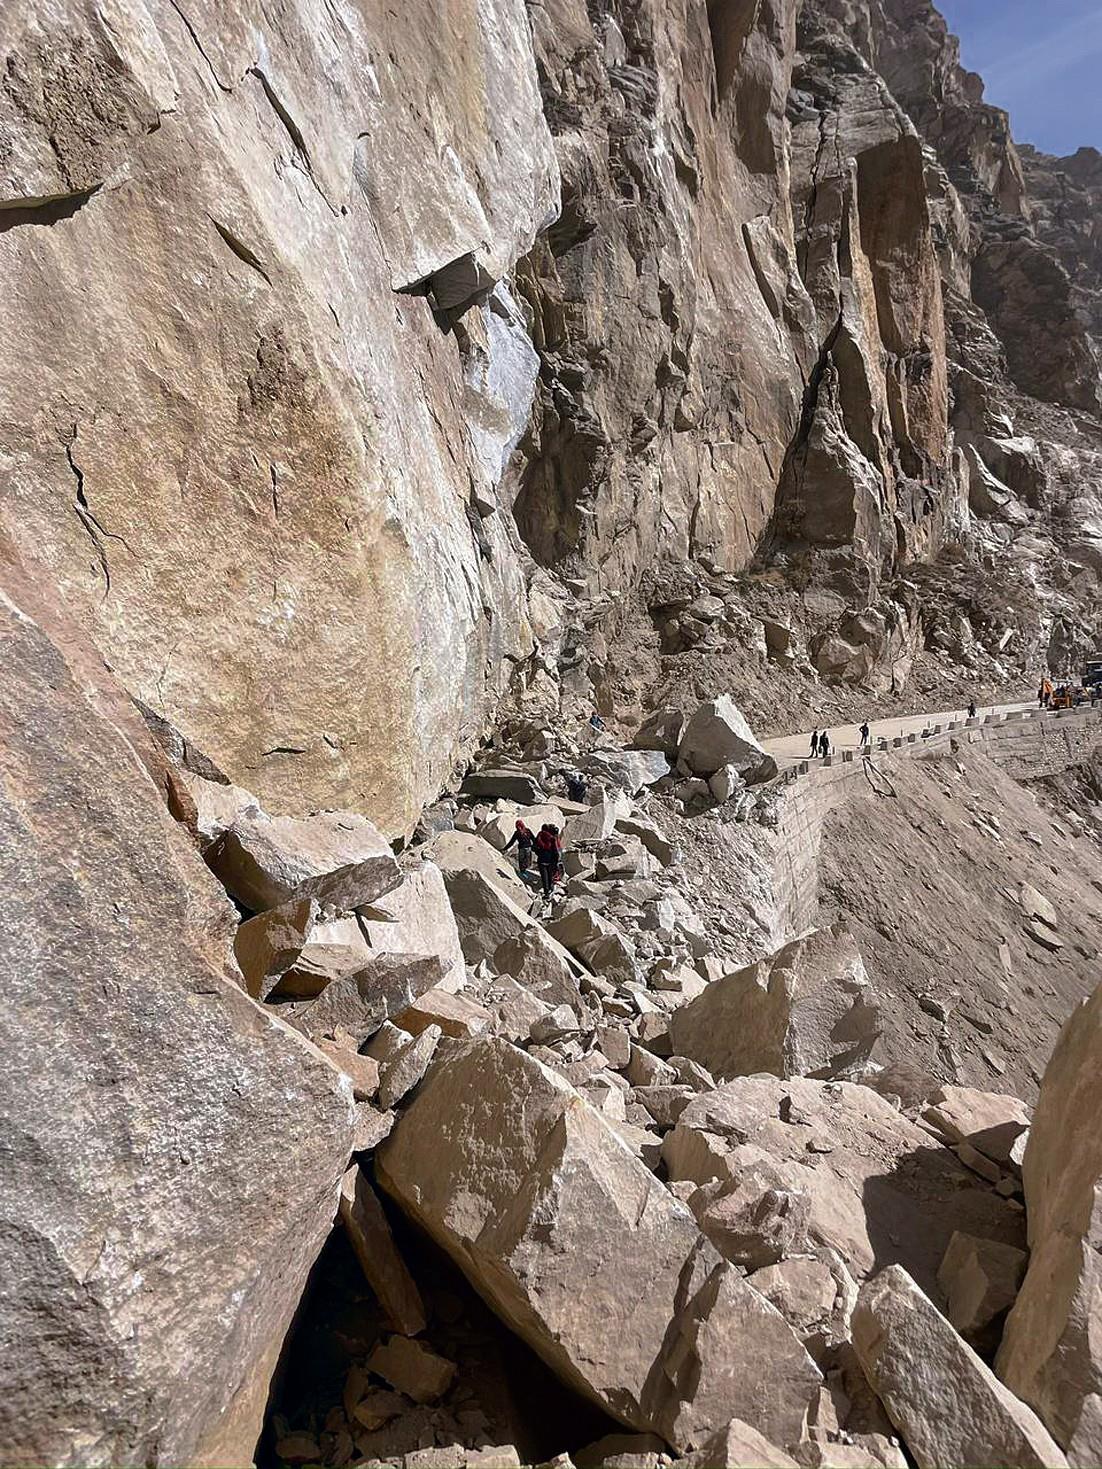 Kinnaur-Kaza highway blocked after landslide